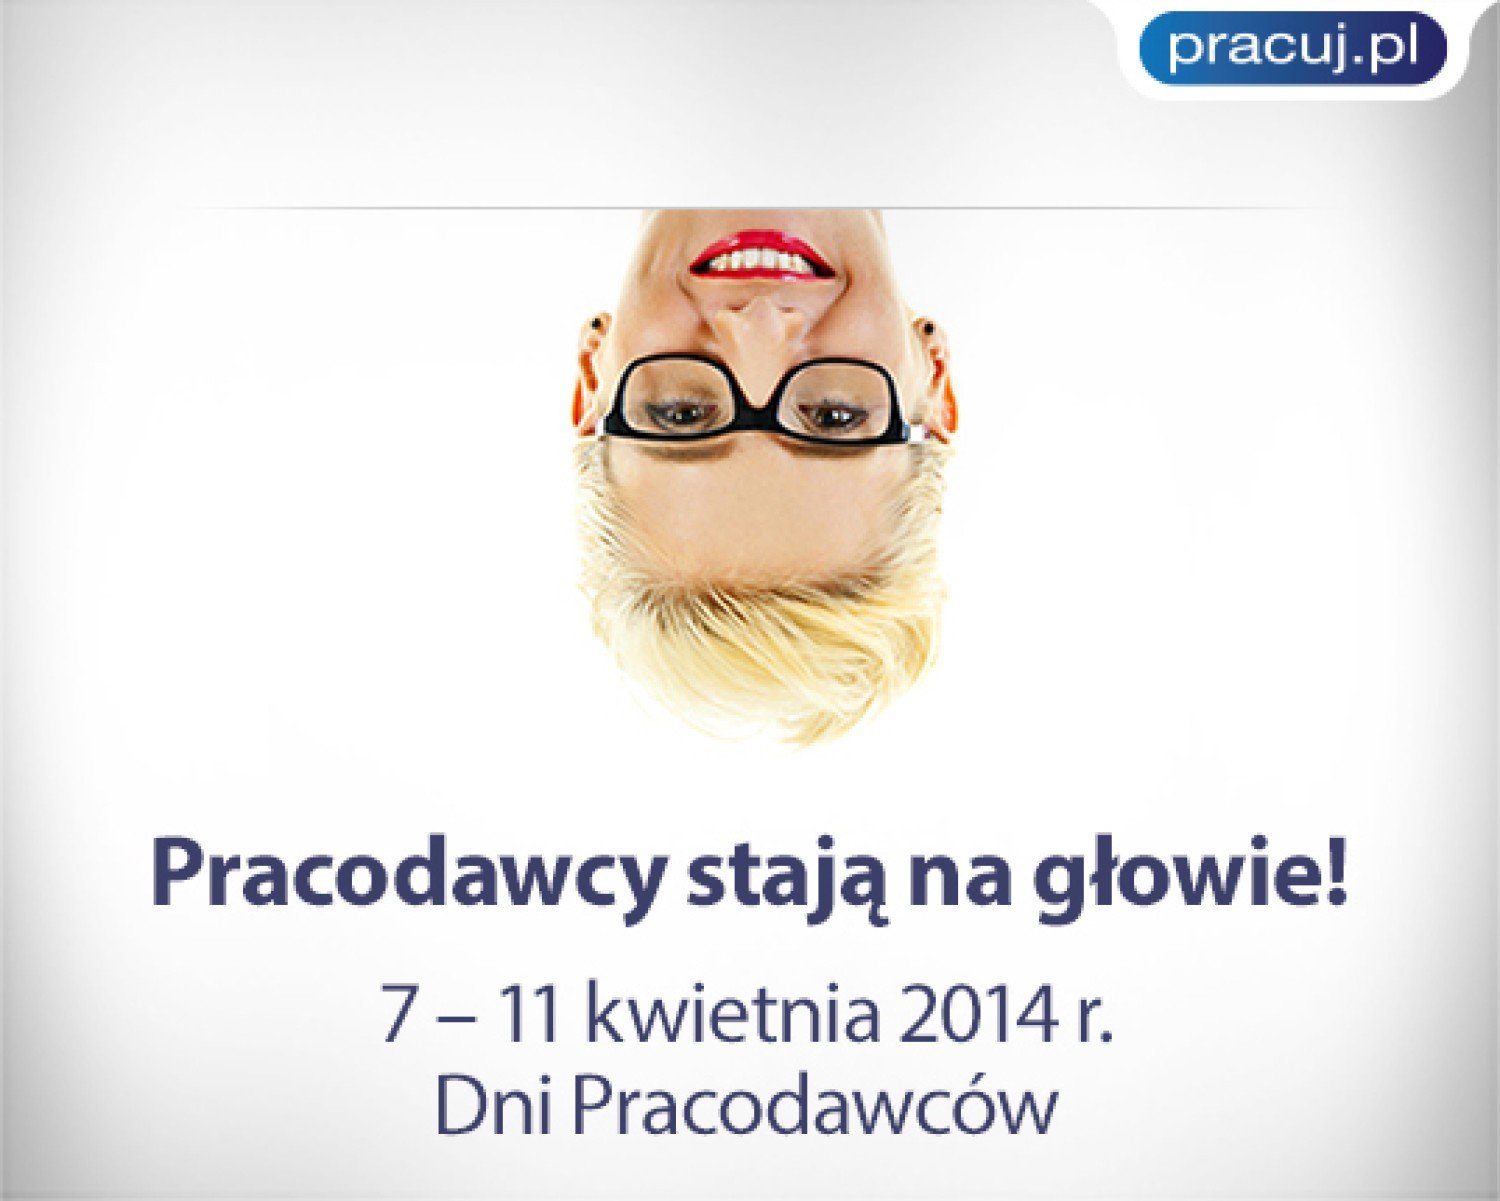 Dni pracodawców pracuj.pl. Już 7-11 kwietnia | Warszawa Nasze Miasto